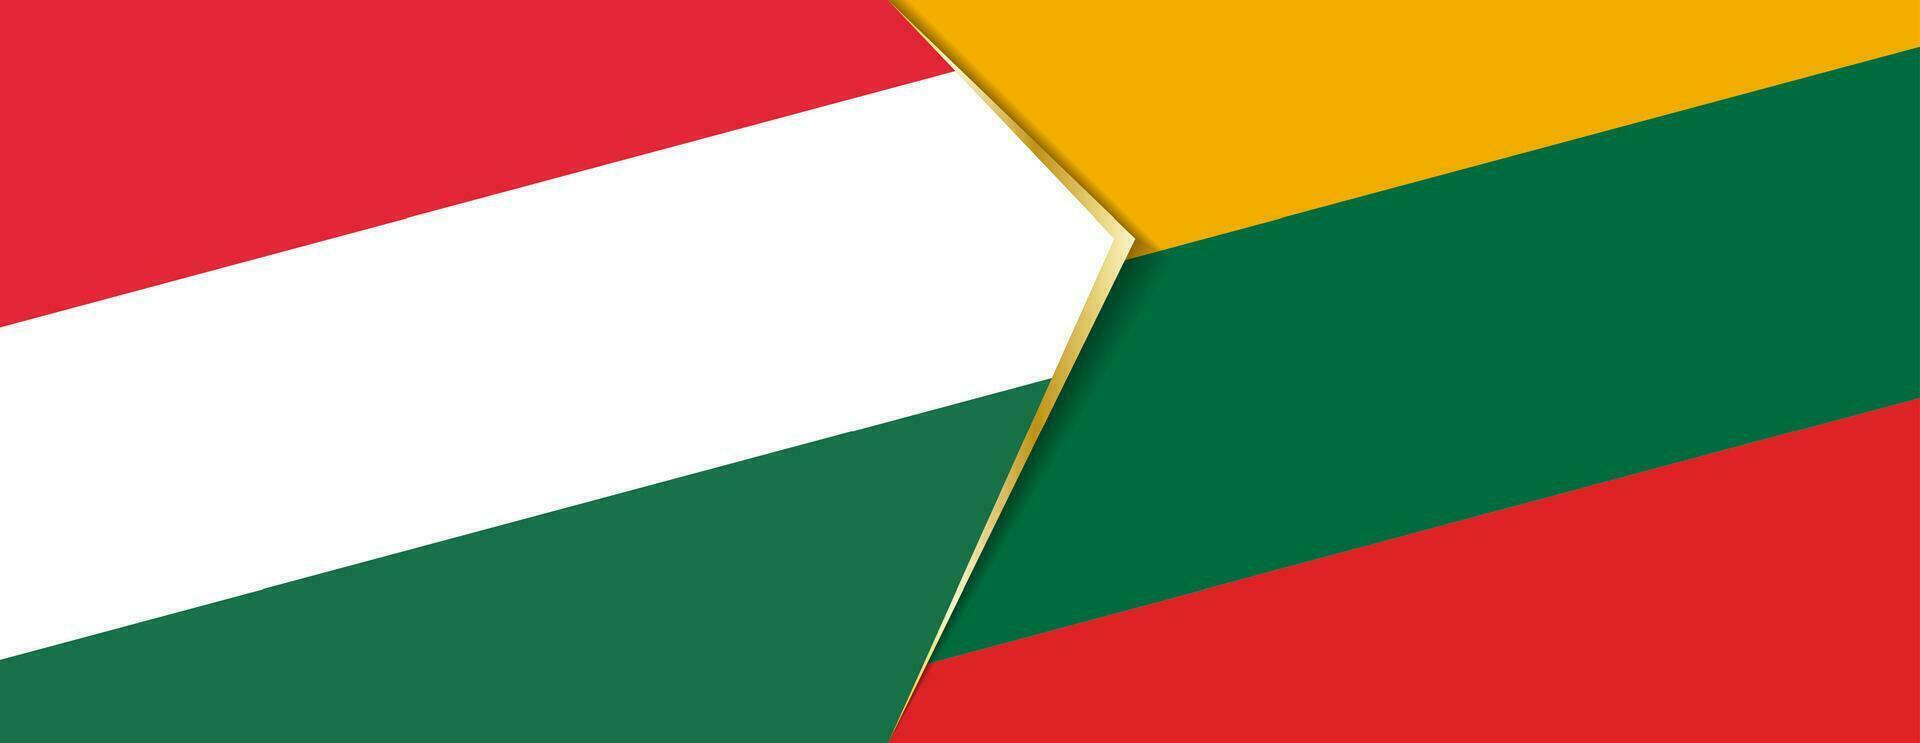 Hungria e Lituânia bandeiras, dois vetor bandeiras.